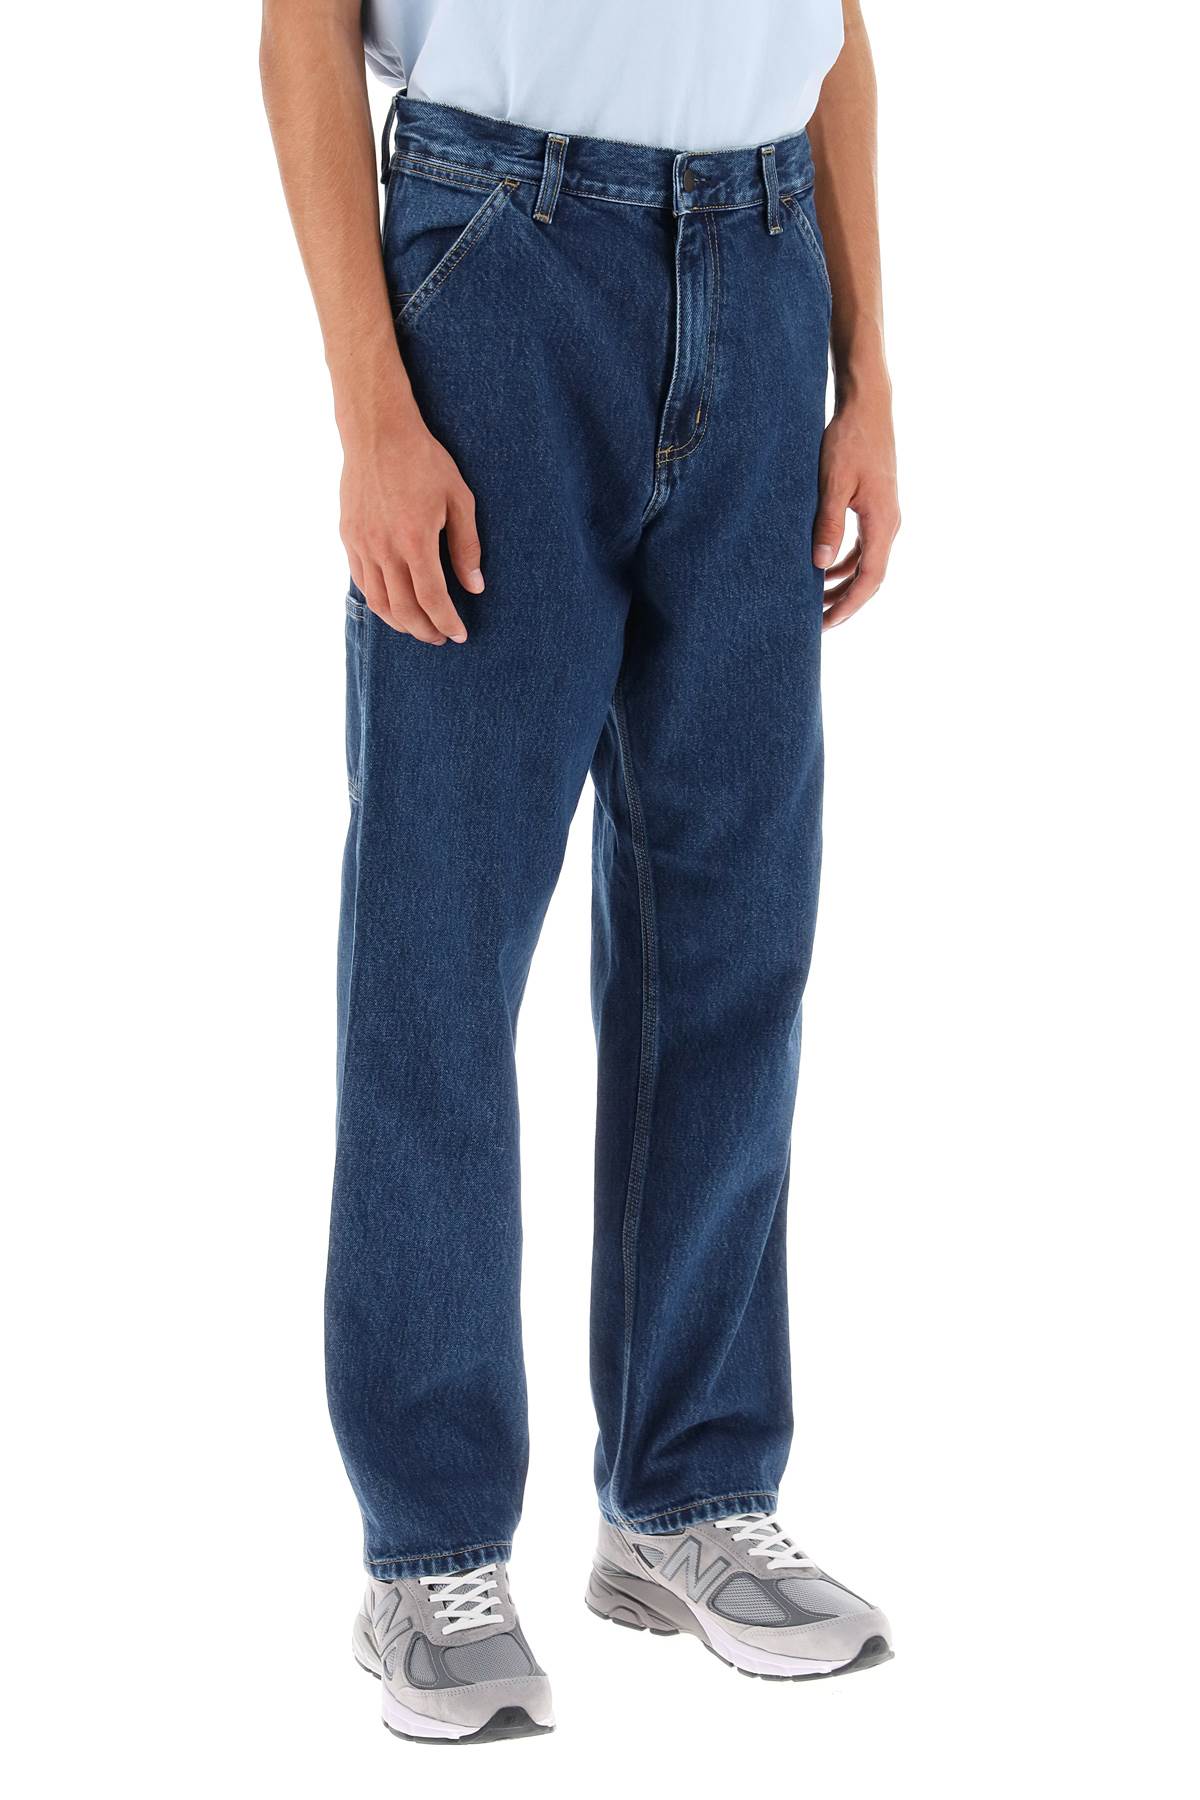 Carhartt wip 'smith' cargo jeans-1